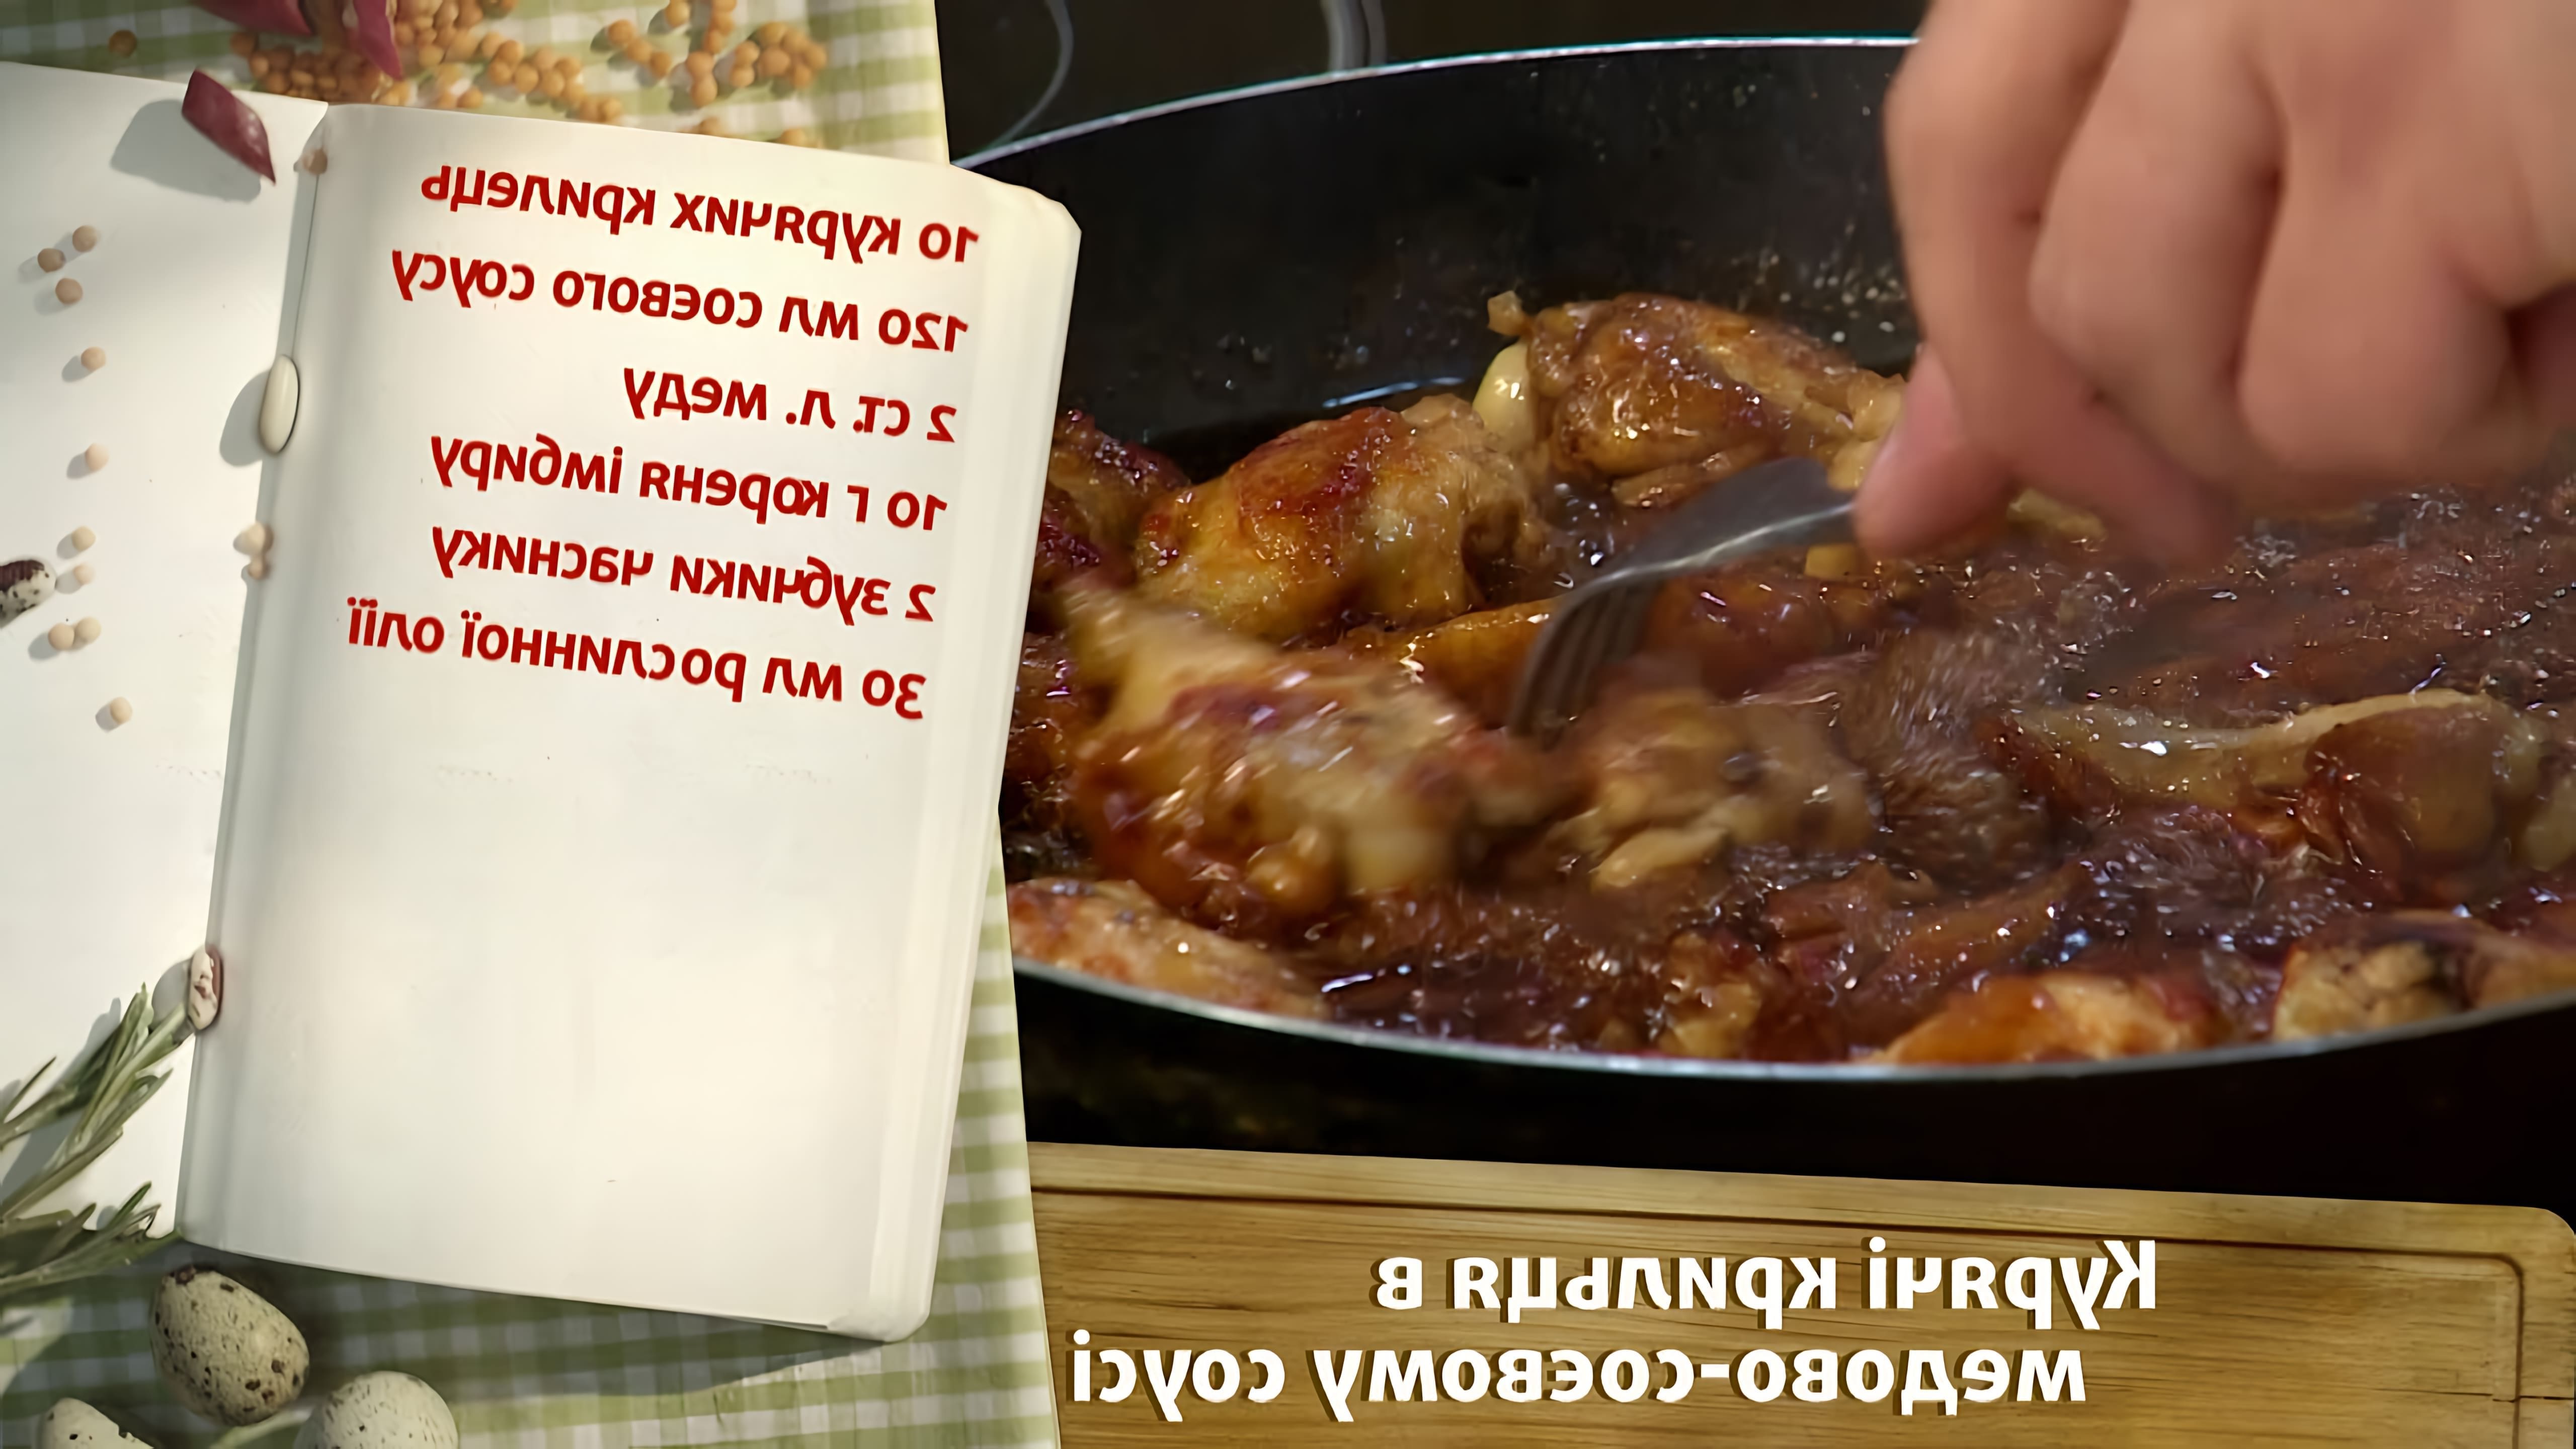 В этом видео демонстрируется рецепт приготовления "быстрых" куриных крылышек в медово-соевом соусе